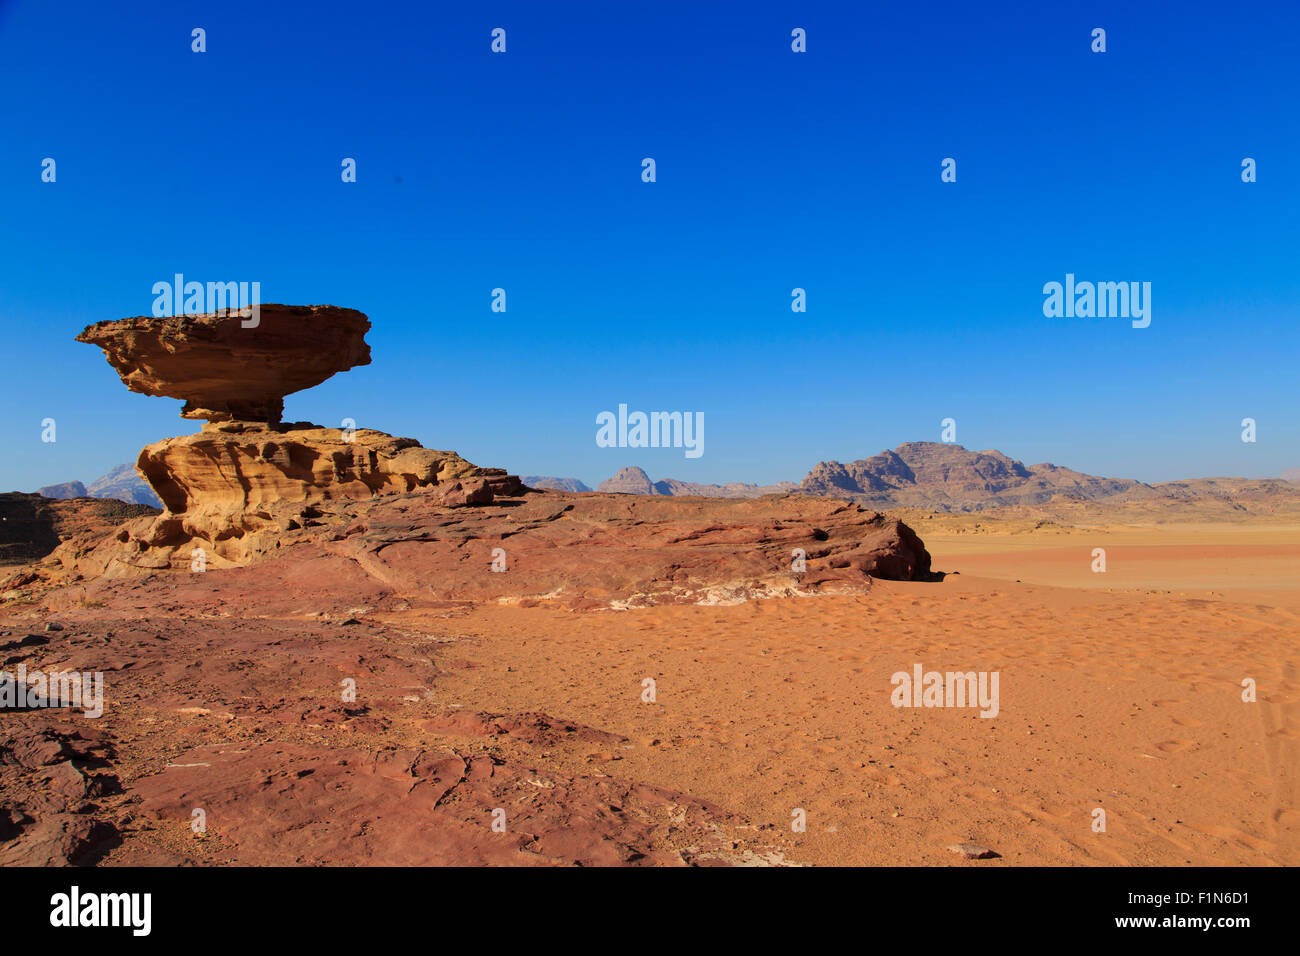 Mushroom Rock in Wadi Rum desert,Jordan Stock Photo